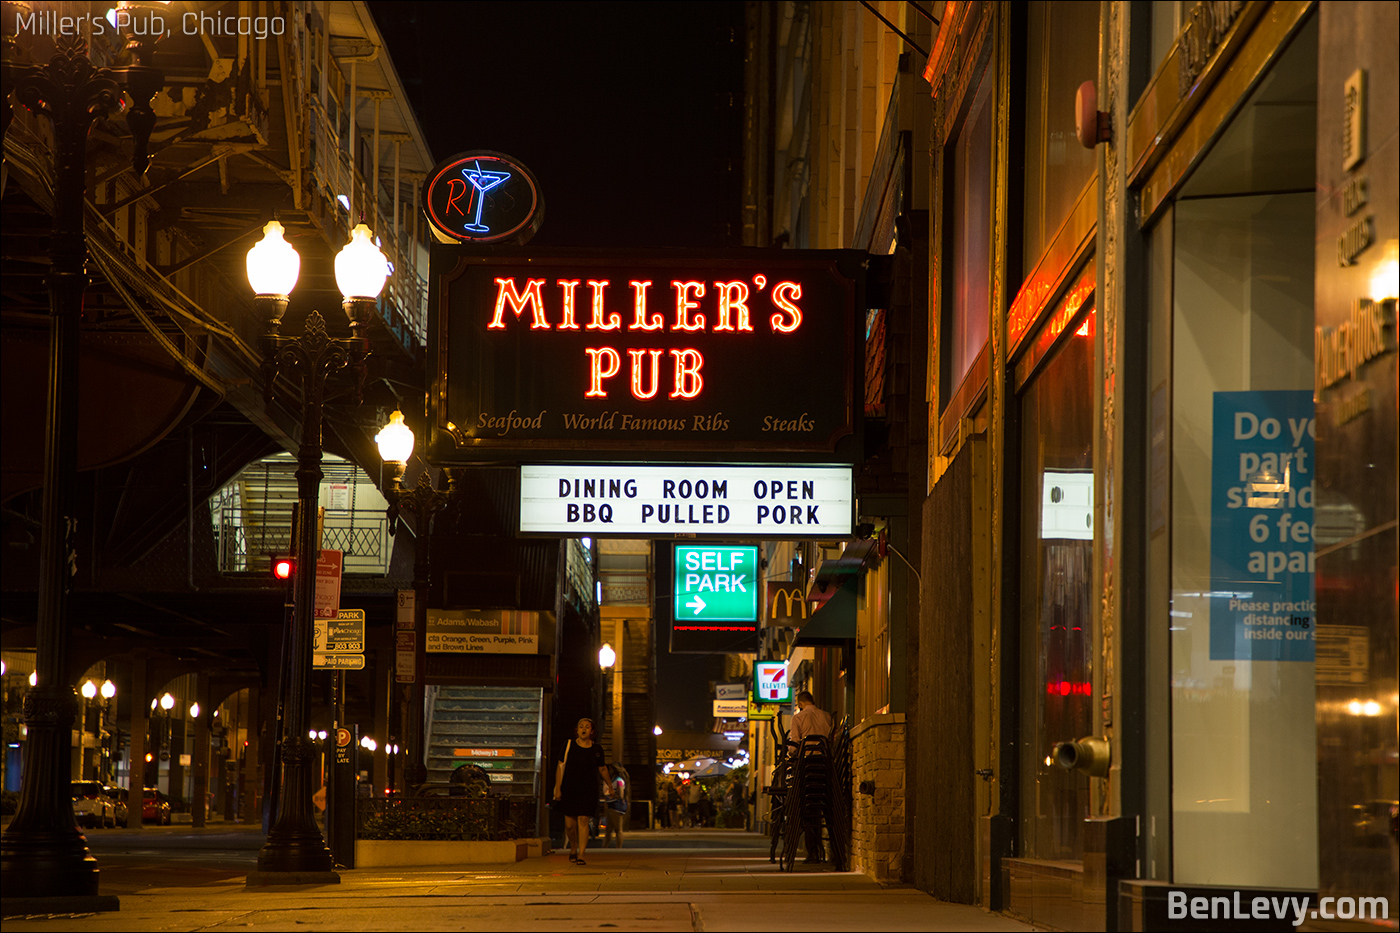 Miller's Pub on Wabash